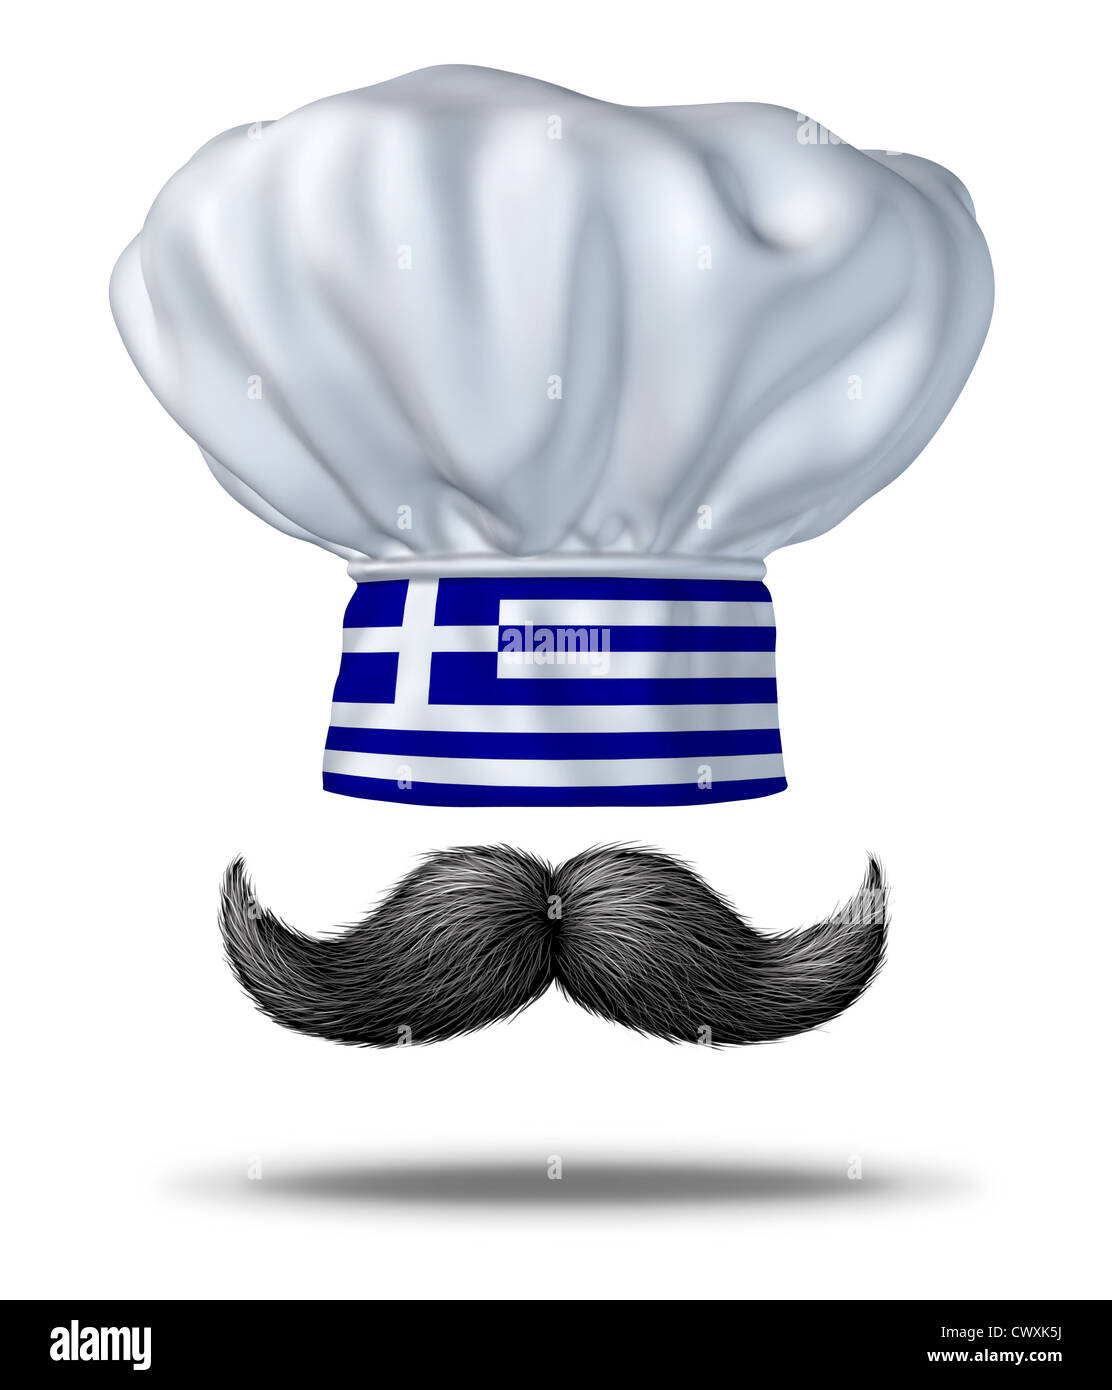 La cucina greca e cibo dalla Grecia con cappello da cuoco con il blu e bandiera bianca e un tradizionale manubrio nero baffi spessi come un simbolo della ricca cultura culinaria di piatti di cucina mediterranea tradizionale. Foto Stock